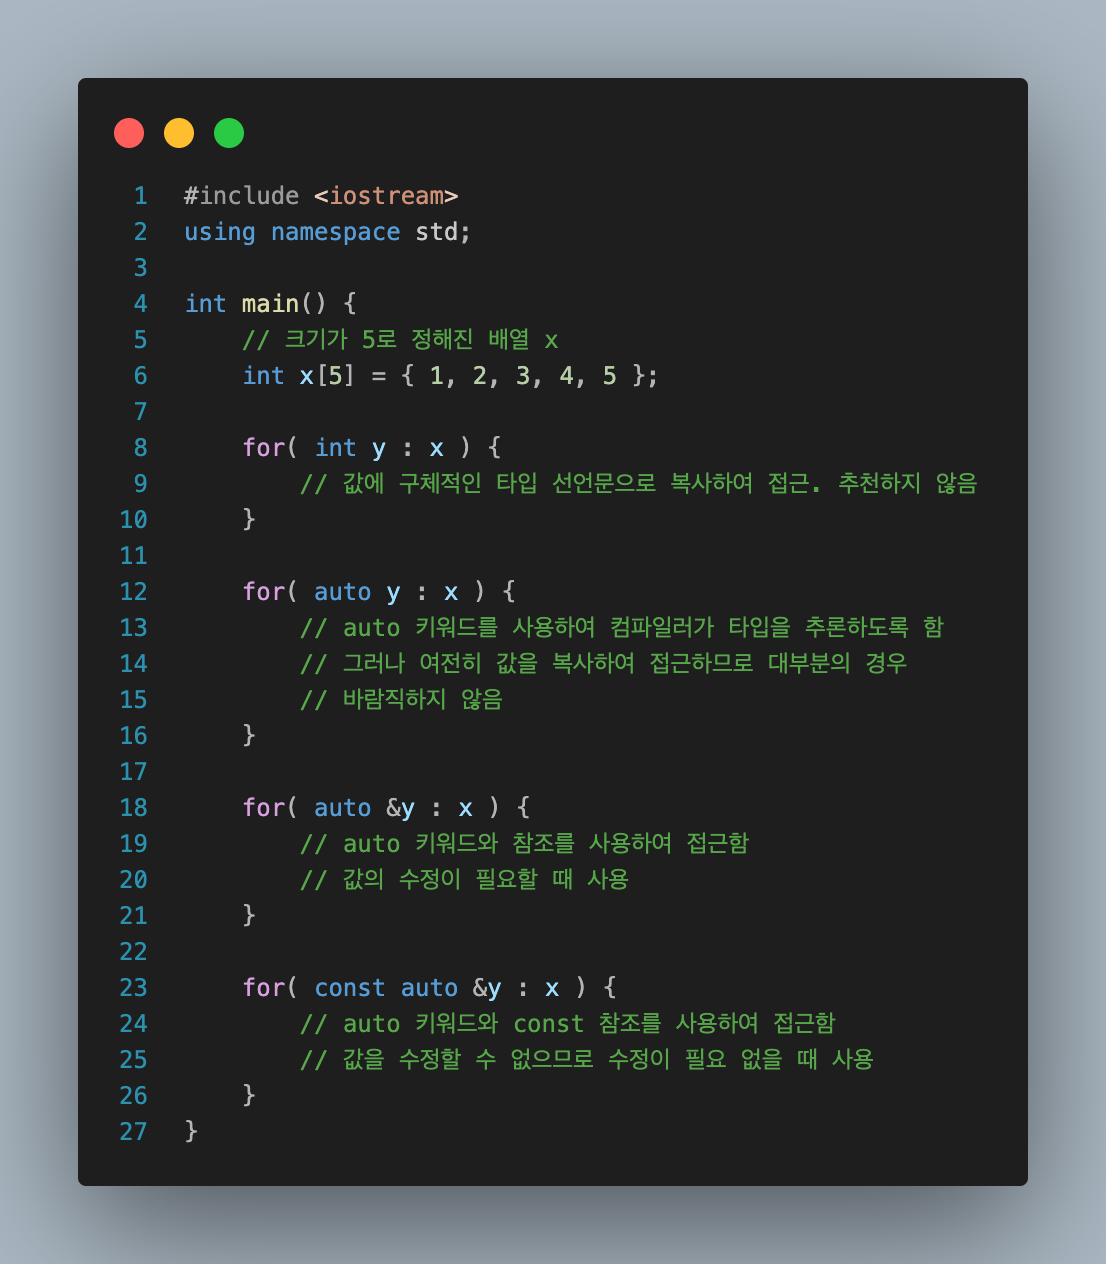 example_code